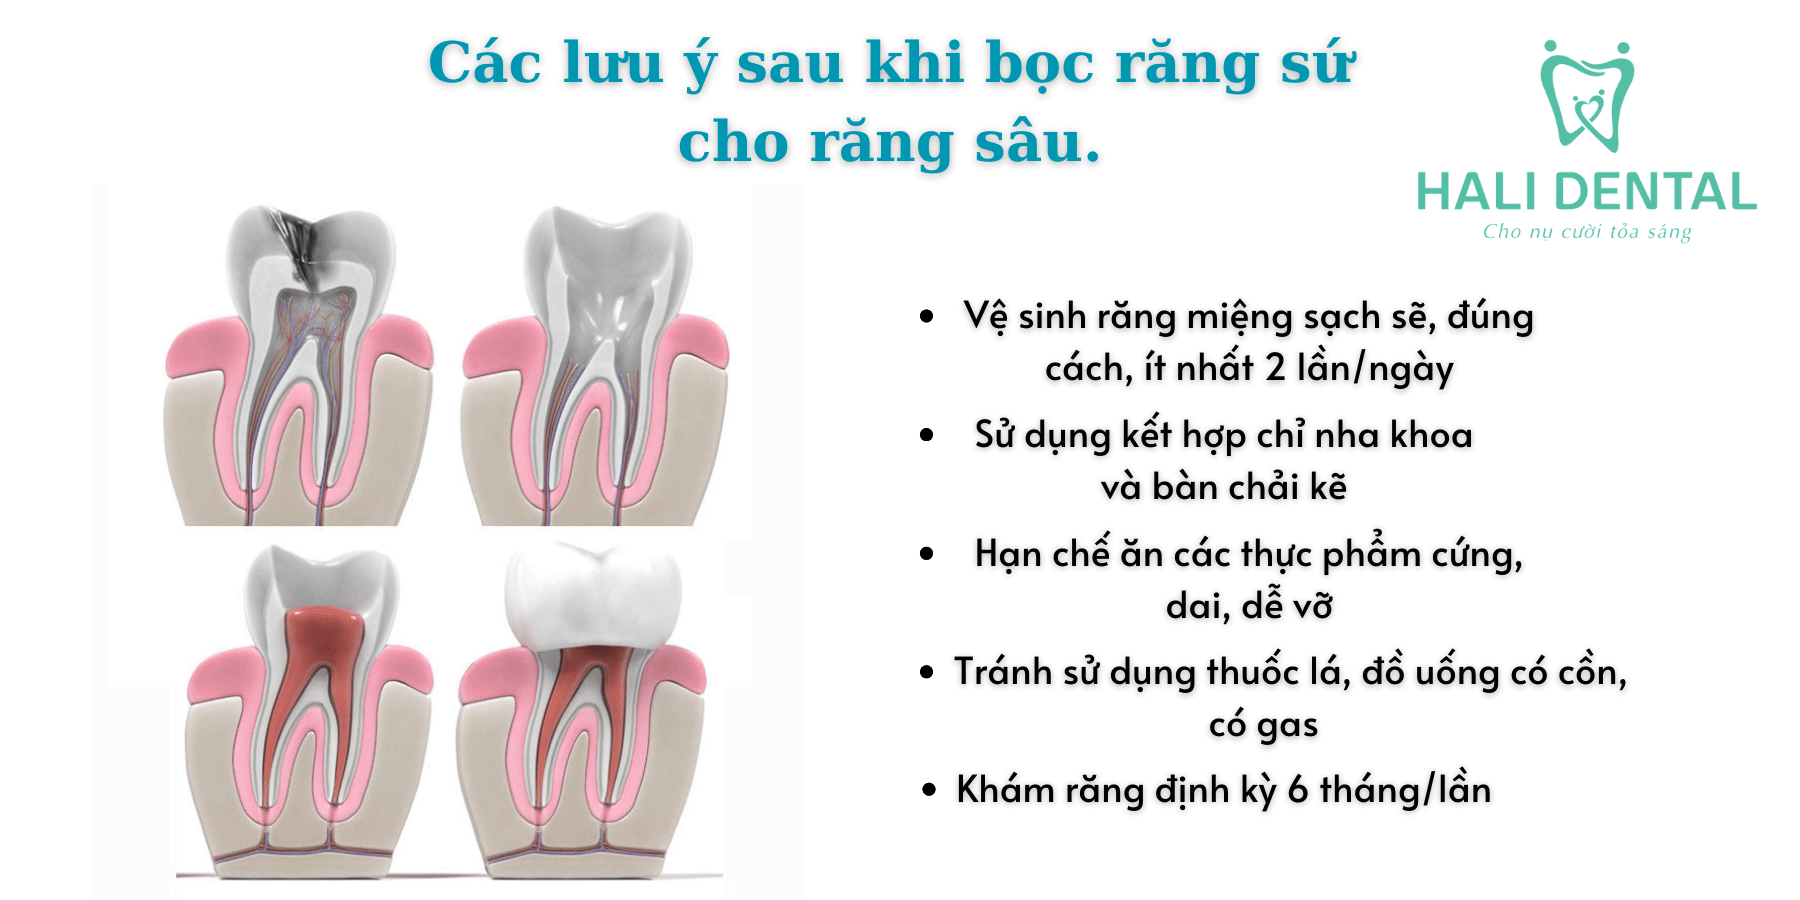 Các lưu ý sau khi bọc răng sứ cho răng sâu